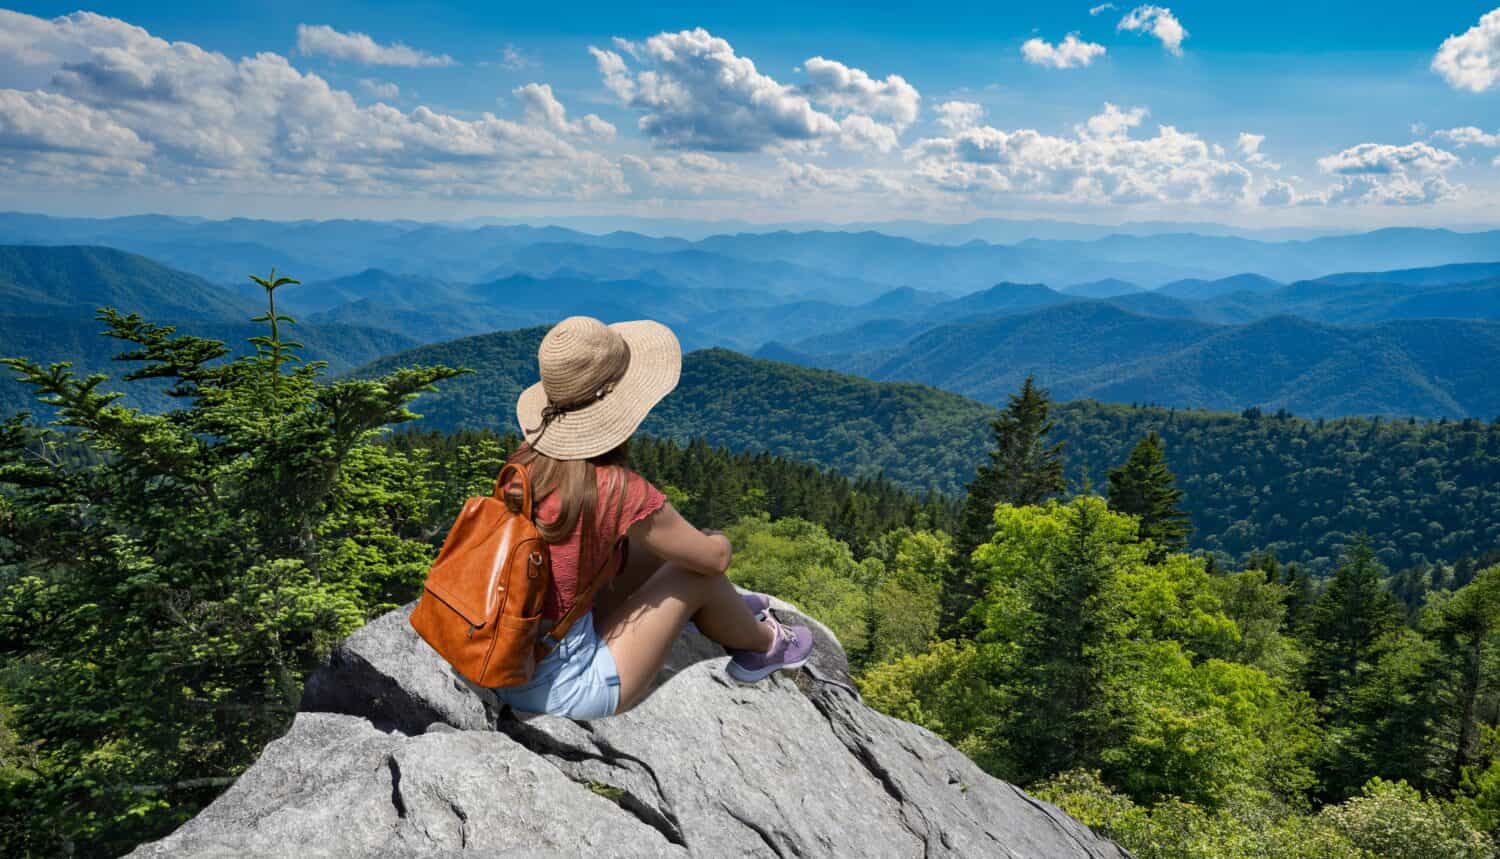 Ragazza della viandante che si siede su un bordo della scogliera che gode della vista panoramica di estate.  Donna che si rilassa in cima alla montagna autunnale, sopra le nuvole.  Blue Ridge Parkway ,vicino a Asheville, North Carolina, Stati Uniti d'America.